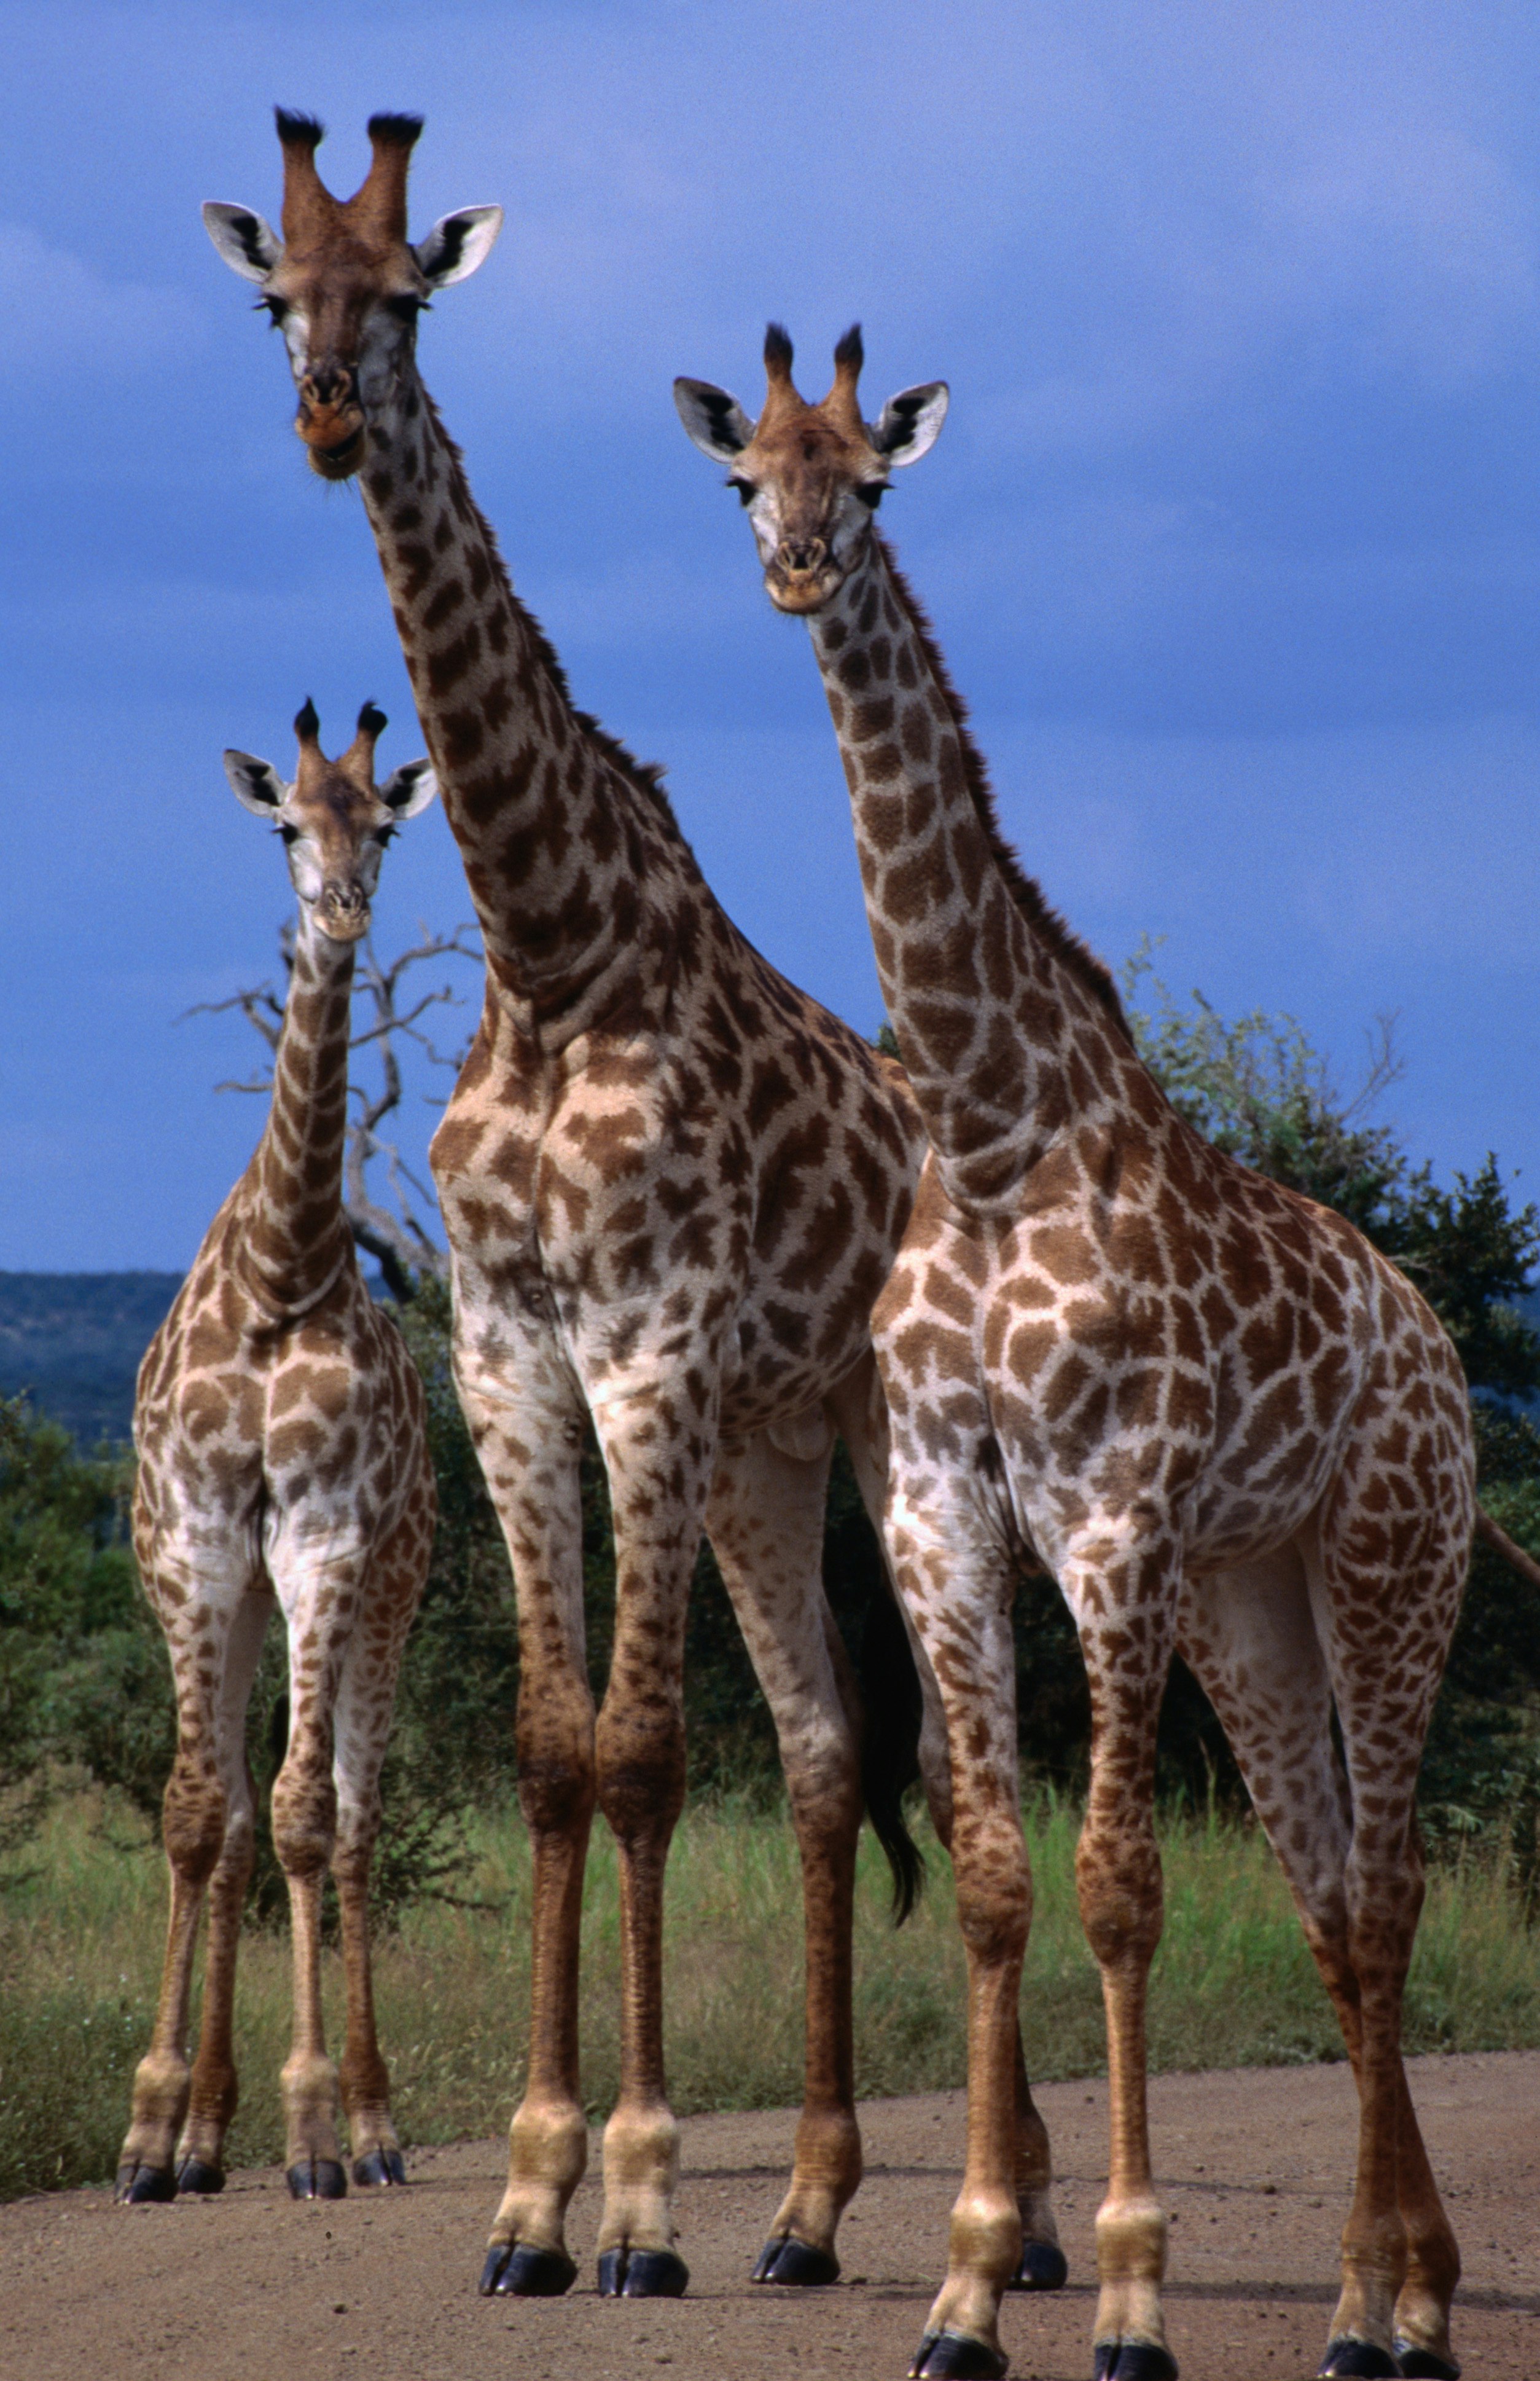 Giraffe family, Kruger National Park